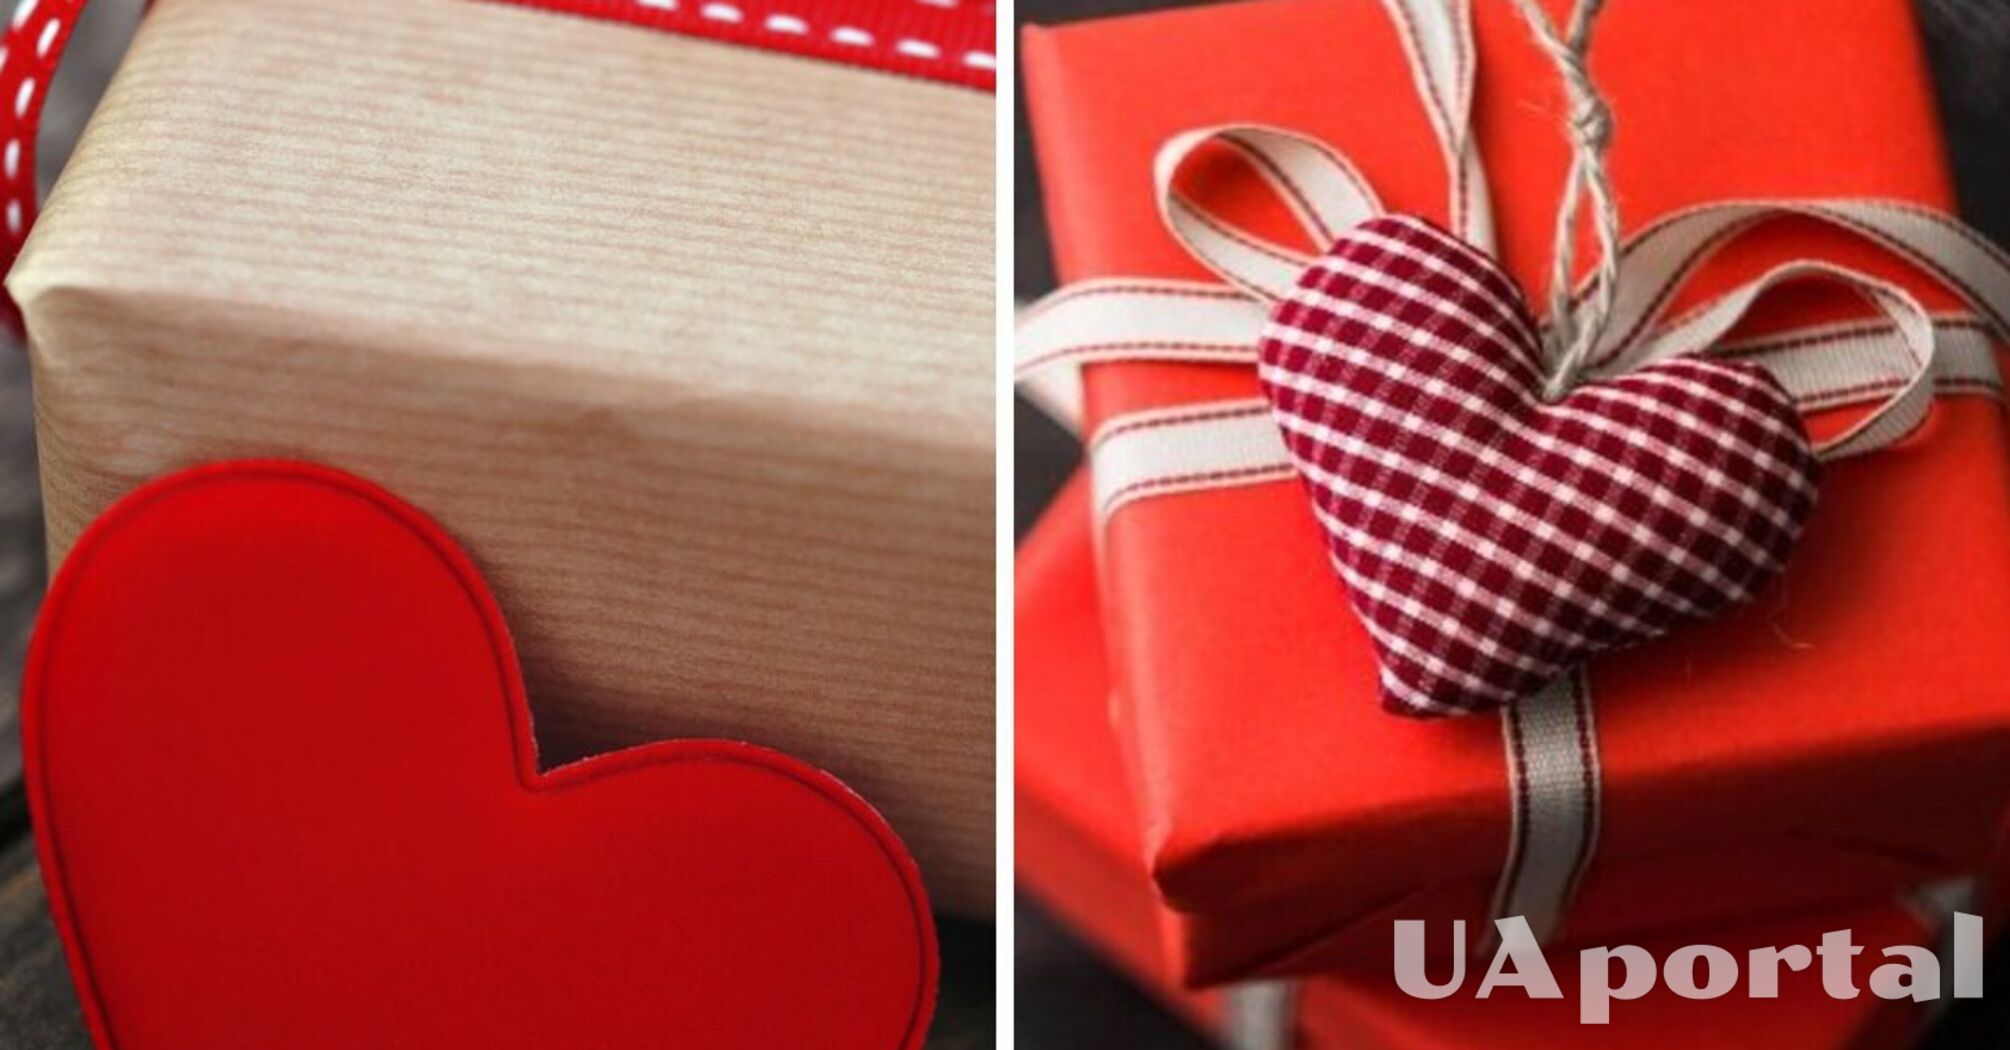 Оригинальные идеи подарков на день святого Валентина для парня